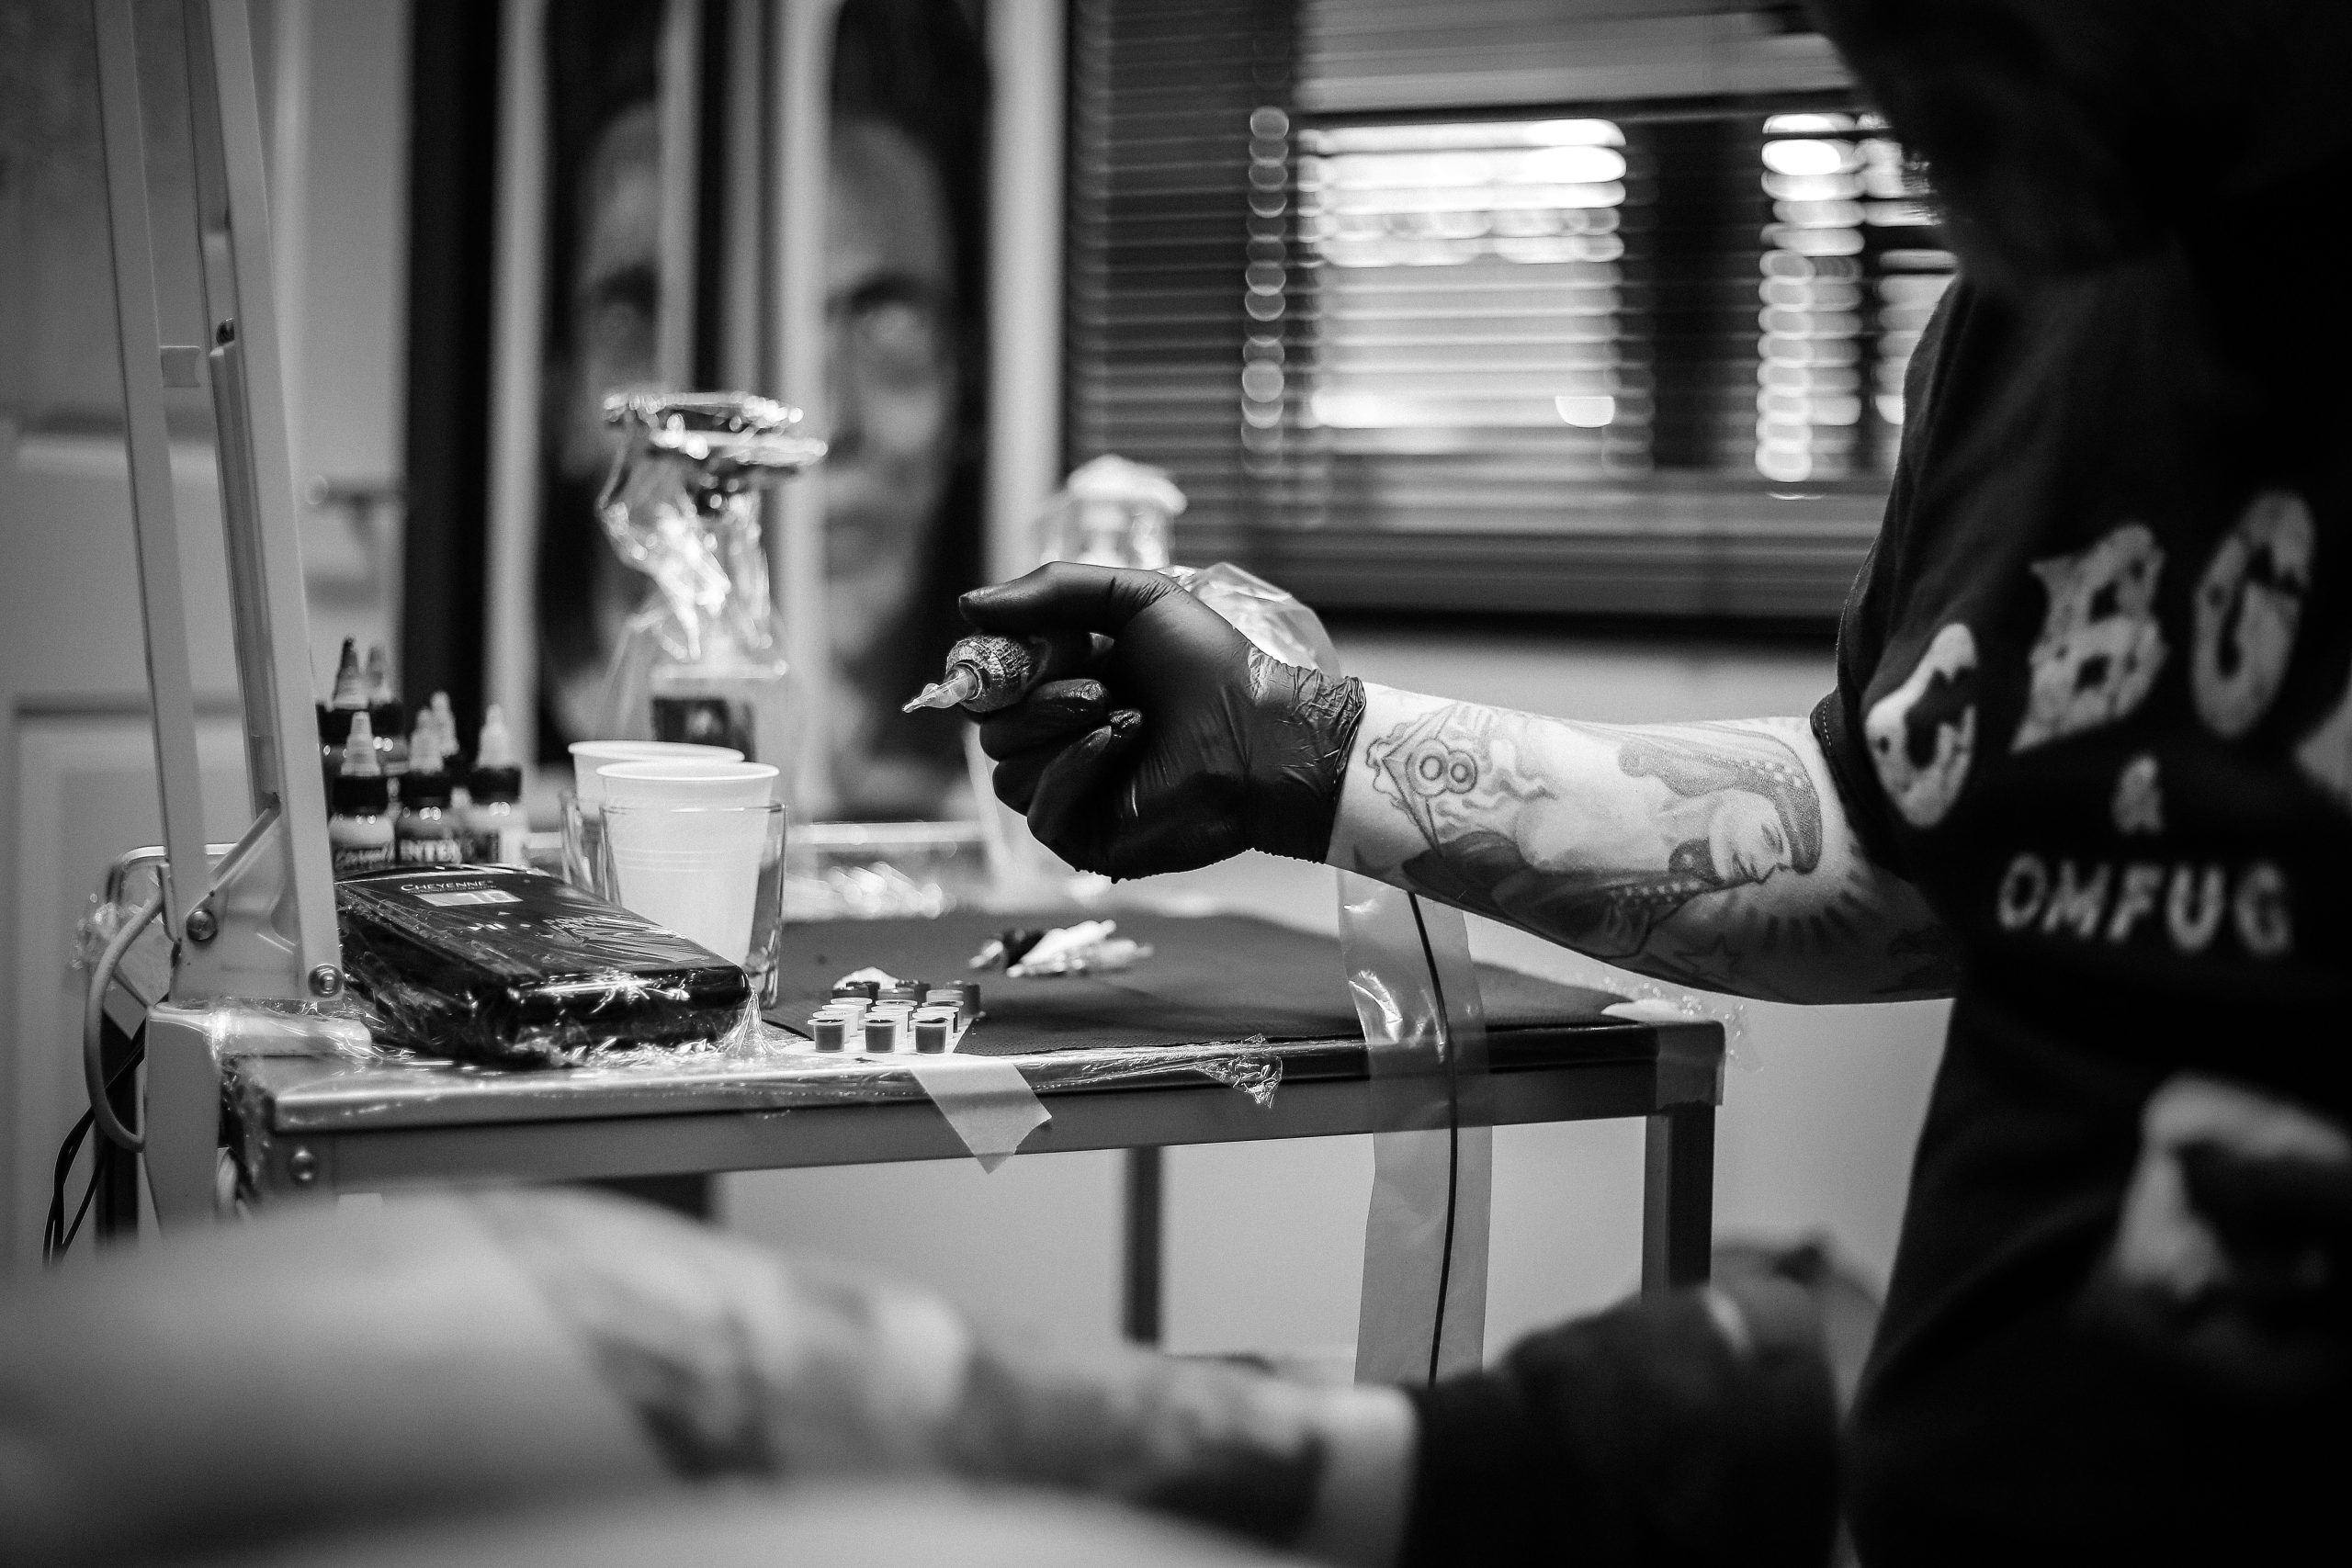 Tattoo process